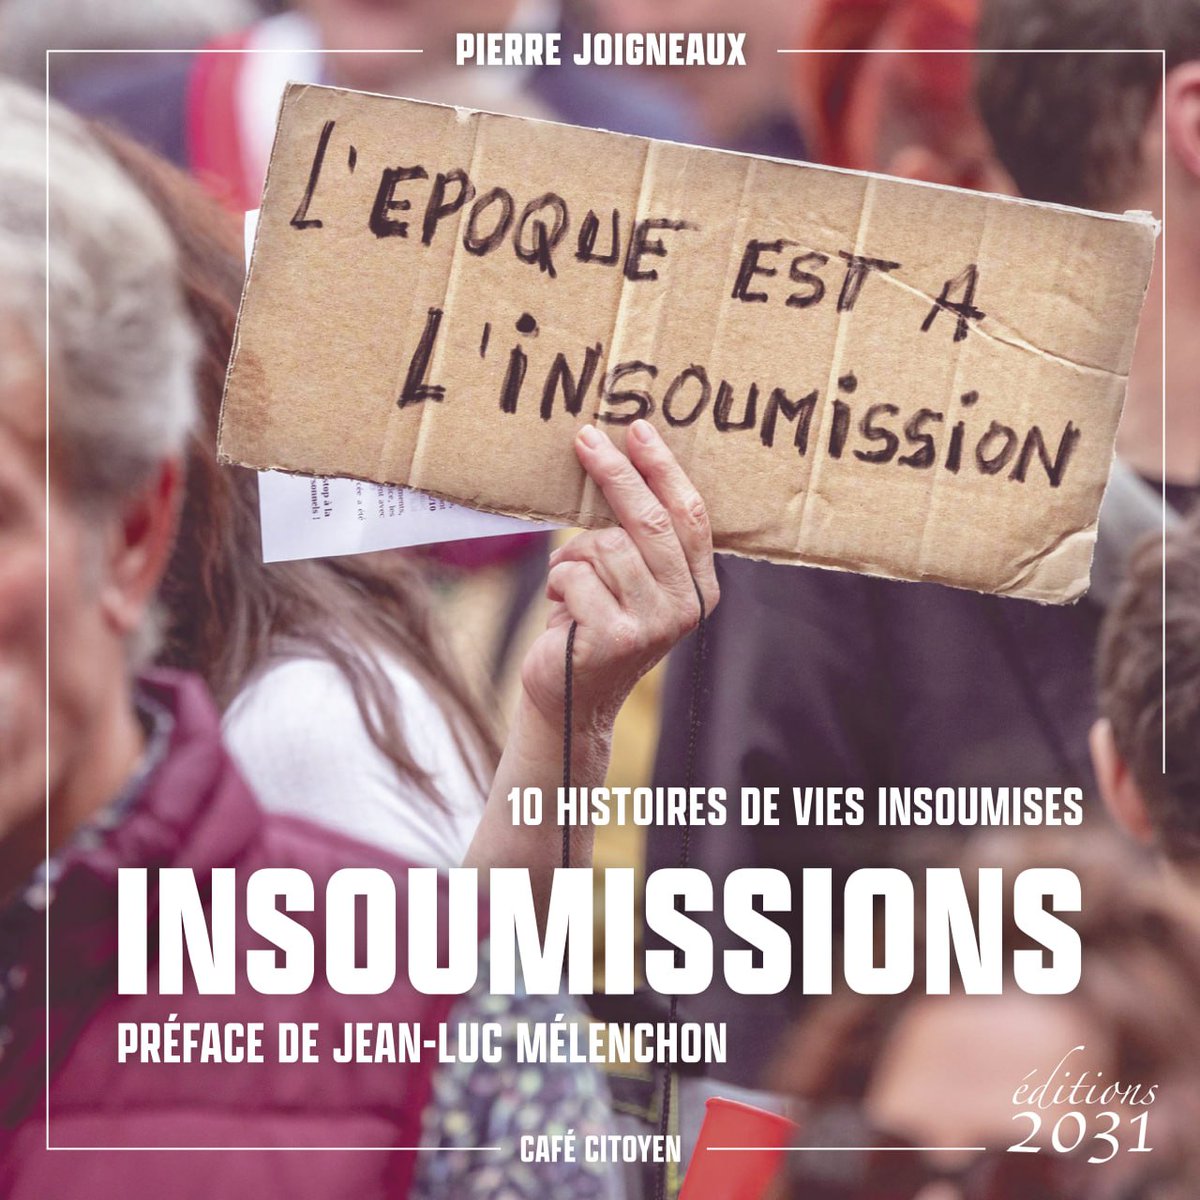 C'est aujourd'hui ! Rdv de 13h à 14h sur le stand des Éditions 2031 pour la séance de dédicaces du livre « Insoumissions ». À tout de suite 😘✊ #Amfis #VendrediLecture